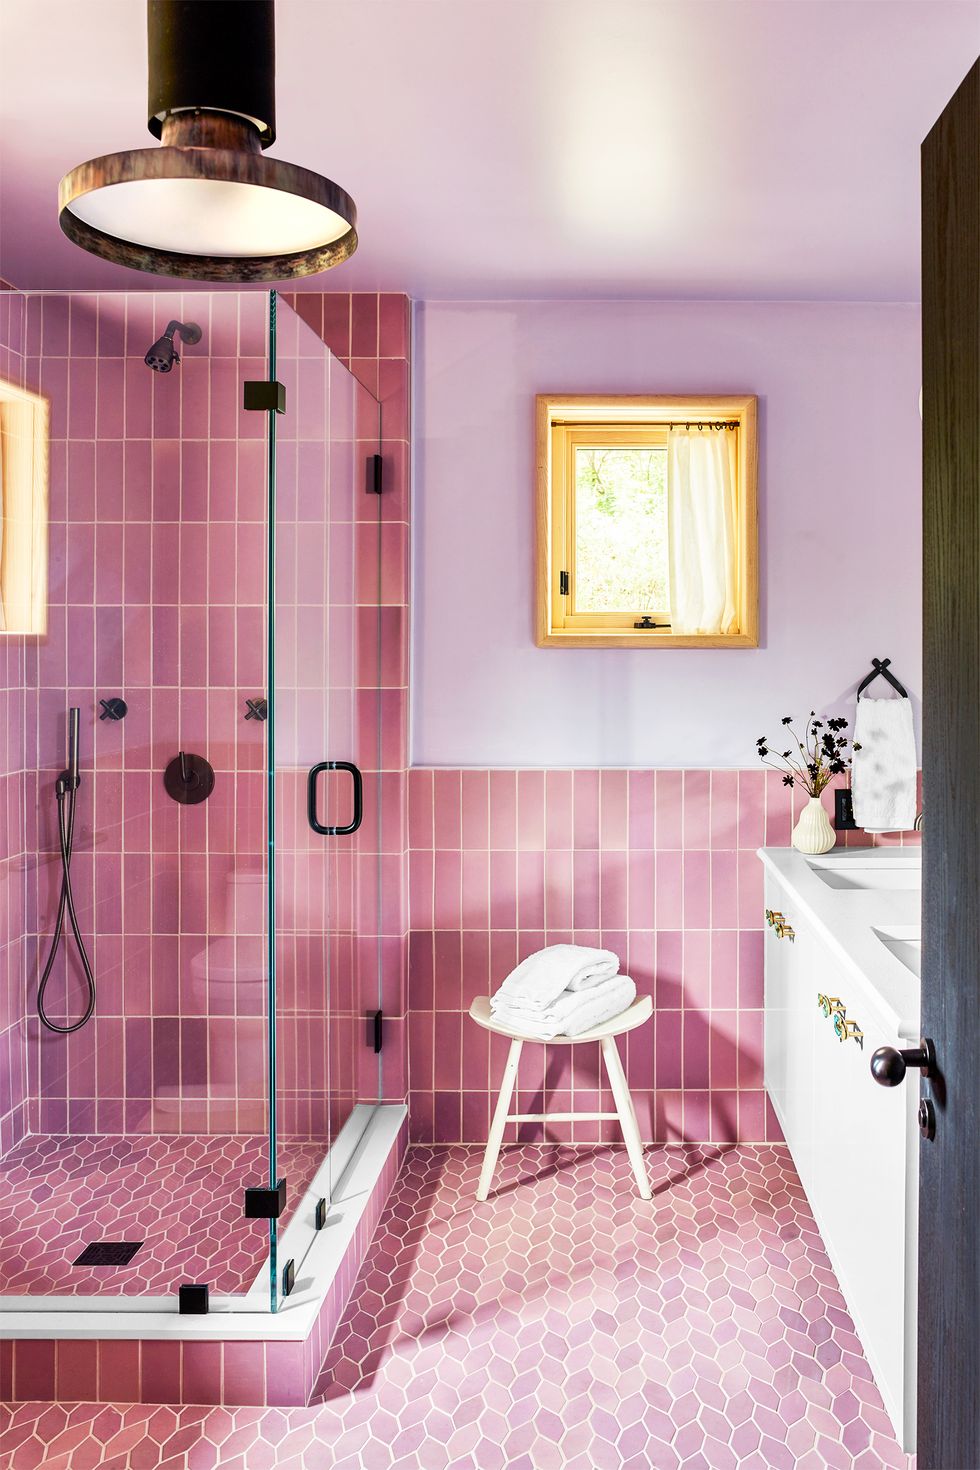 hình ảnh gạch phòng tắm màu hồng với nhiều hình dạng khác nhau, đèn trần độc đáo, lọ hoa trang trí, vòi sen mạ vàng